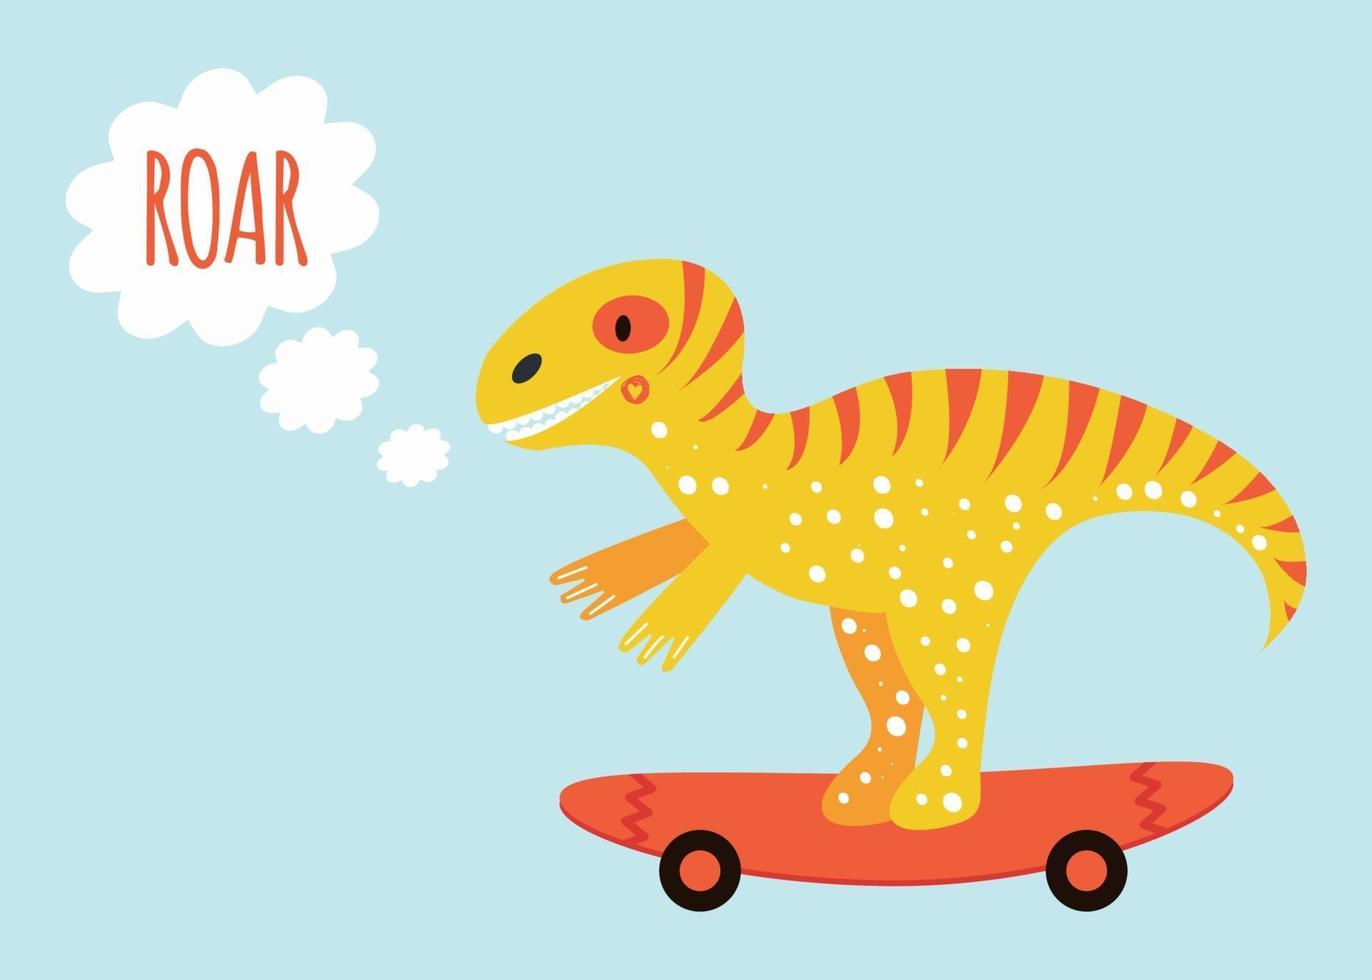 söt dinosaurie tyrannosauruson på skateboardtrycket för barnaffisch med textroar gul och orange vektor